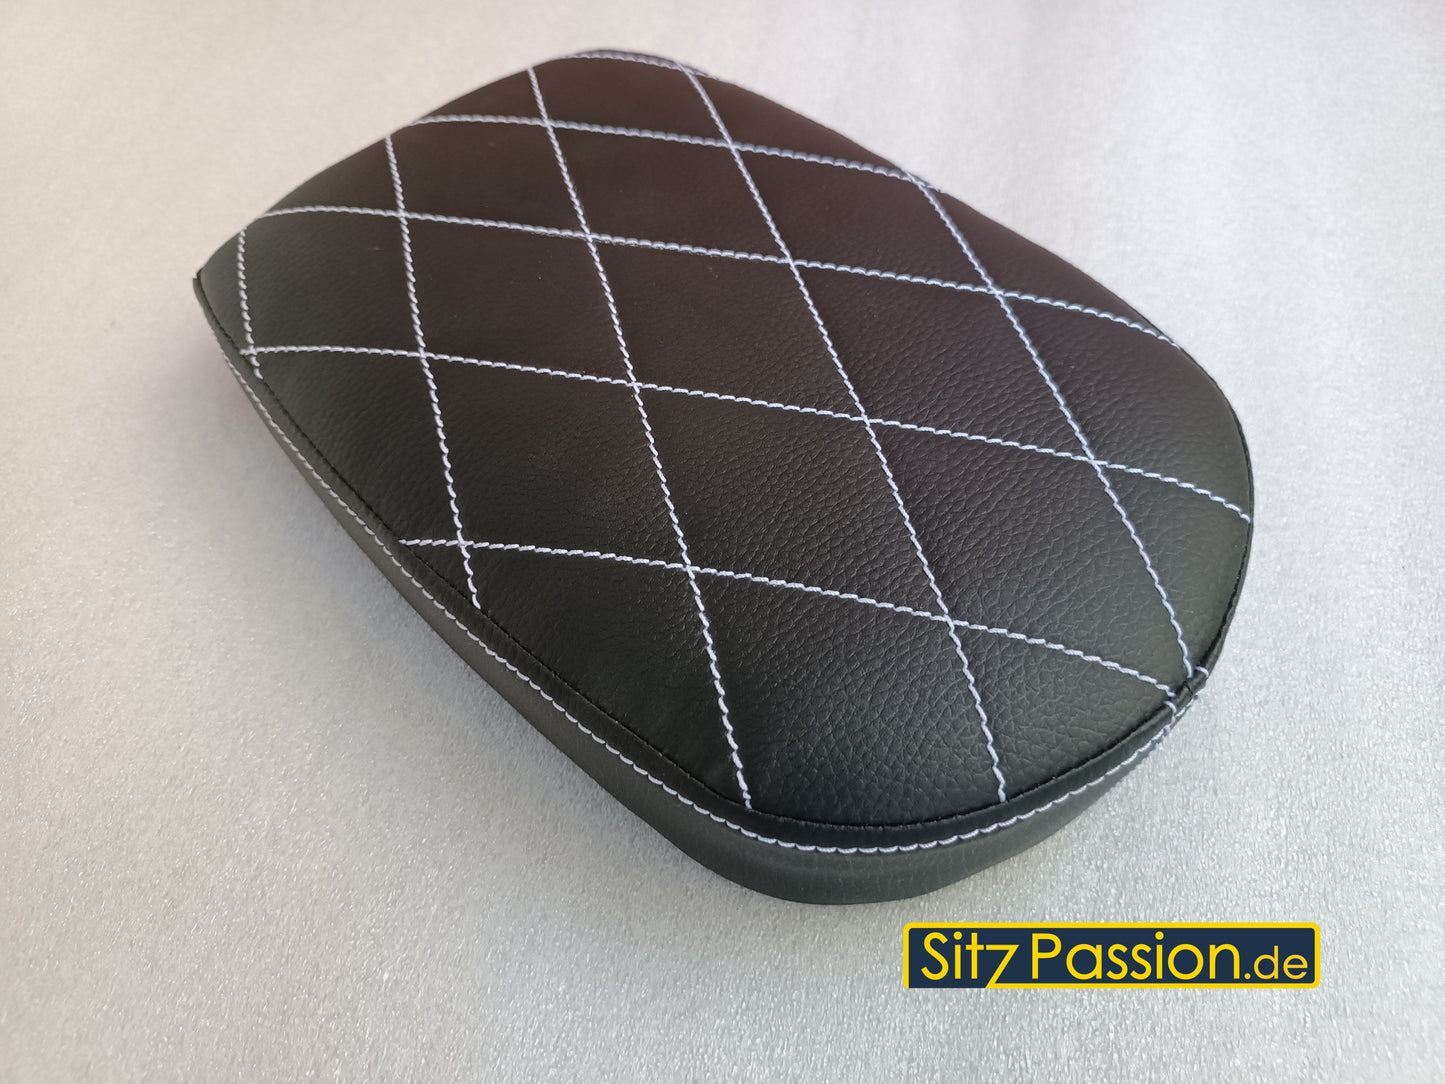 Sitzbank schwarz mit weiß abgesteppter Naht und integrierter Rücklichthalterung - Simson Star Spatz